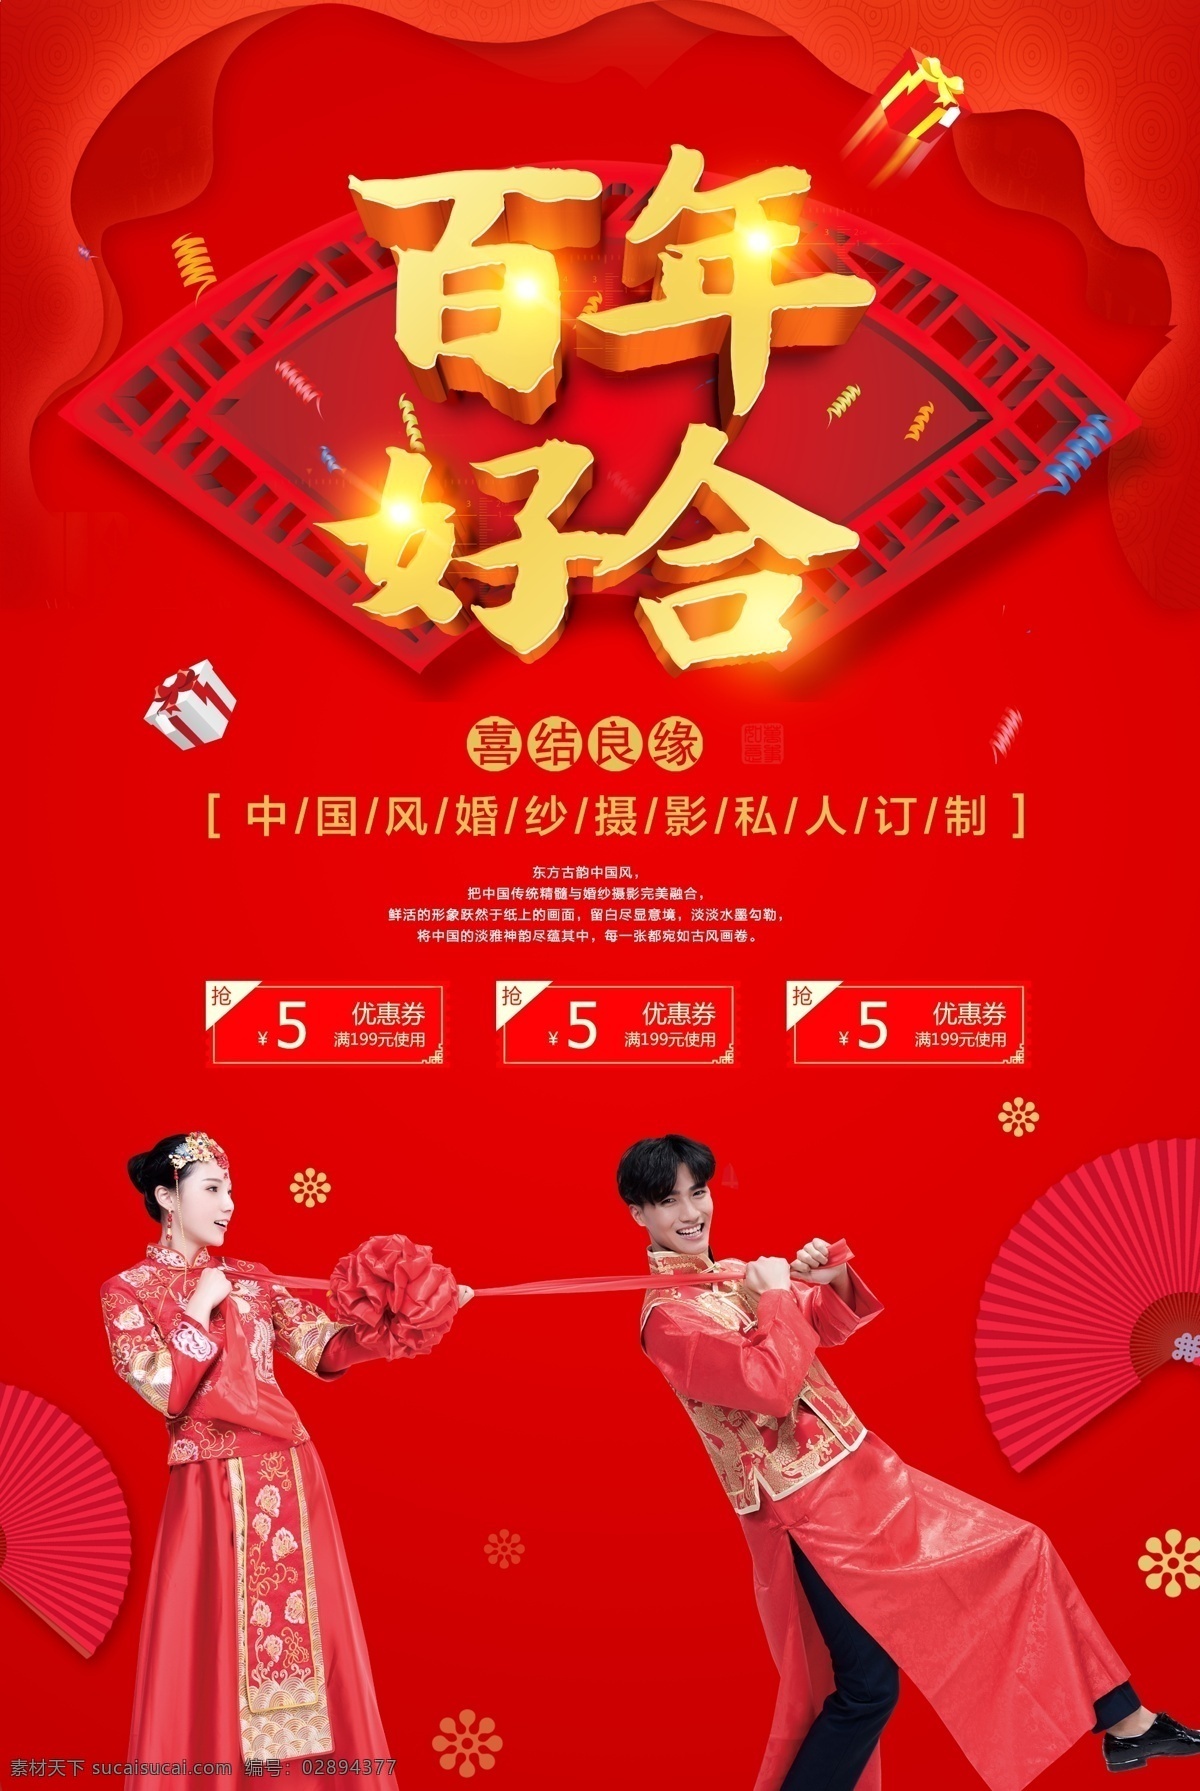 中国 风 婚纱摄影 海报 百年好 合 中国风 婚纱照 复古 完美新娘 百年好合 喜结良缘 私人订制